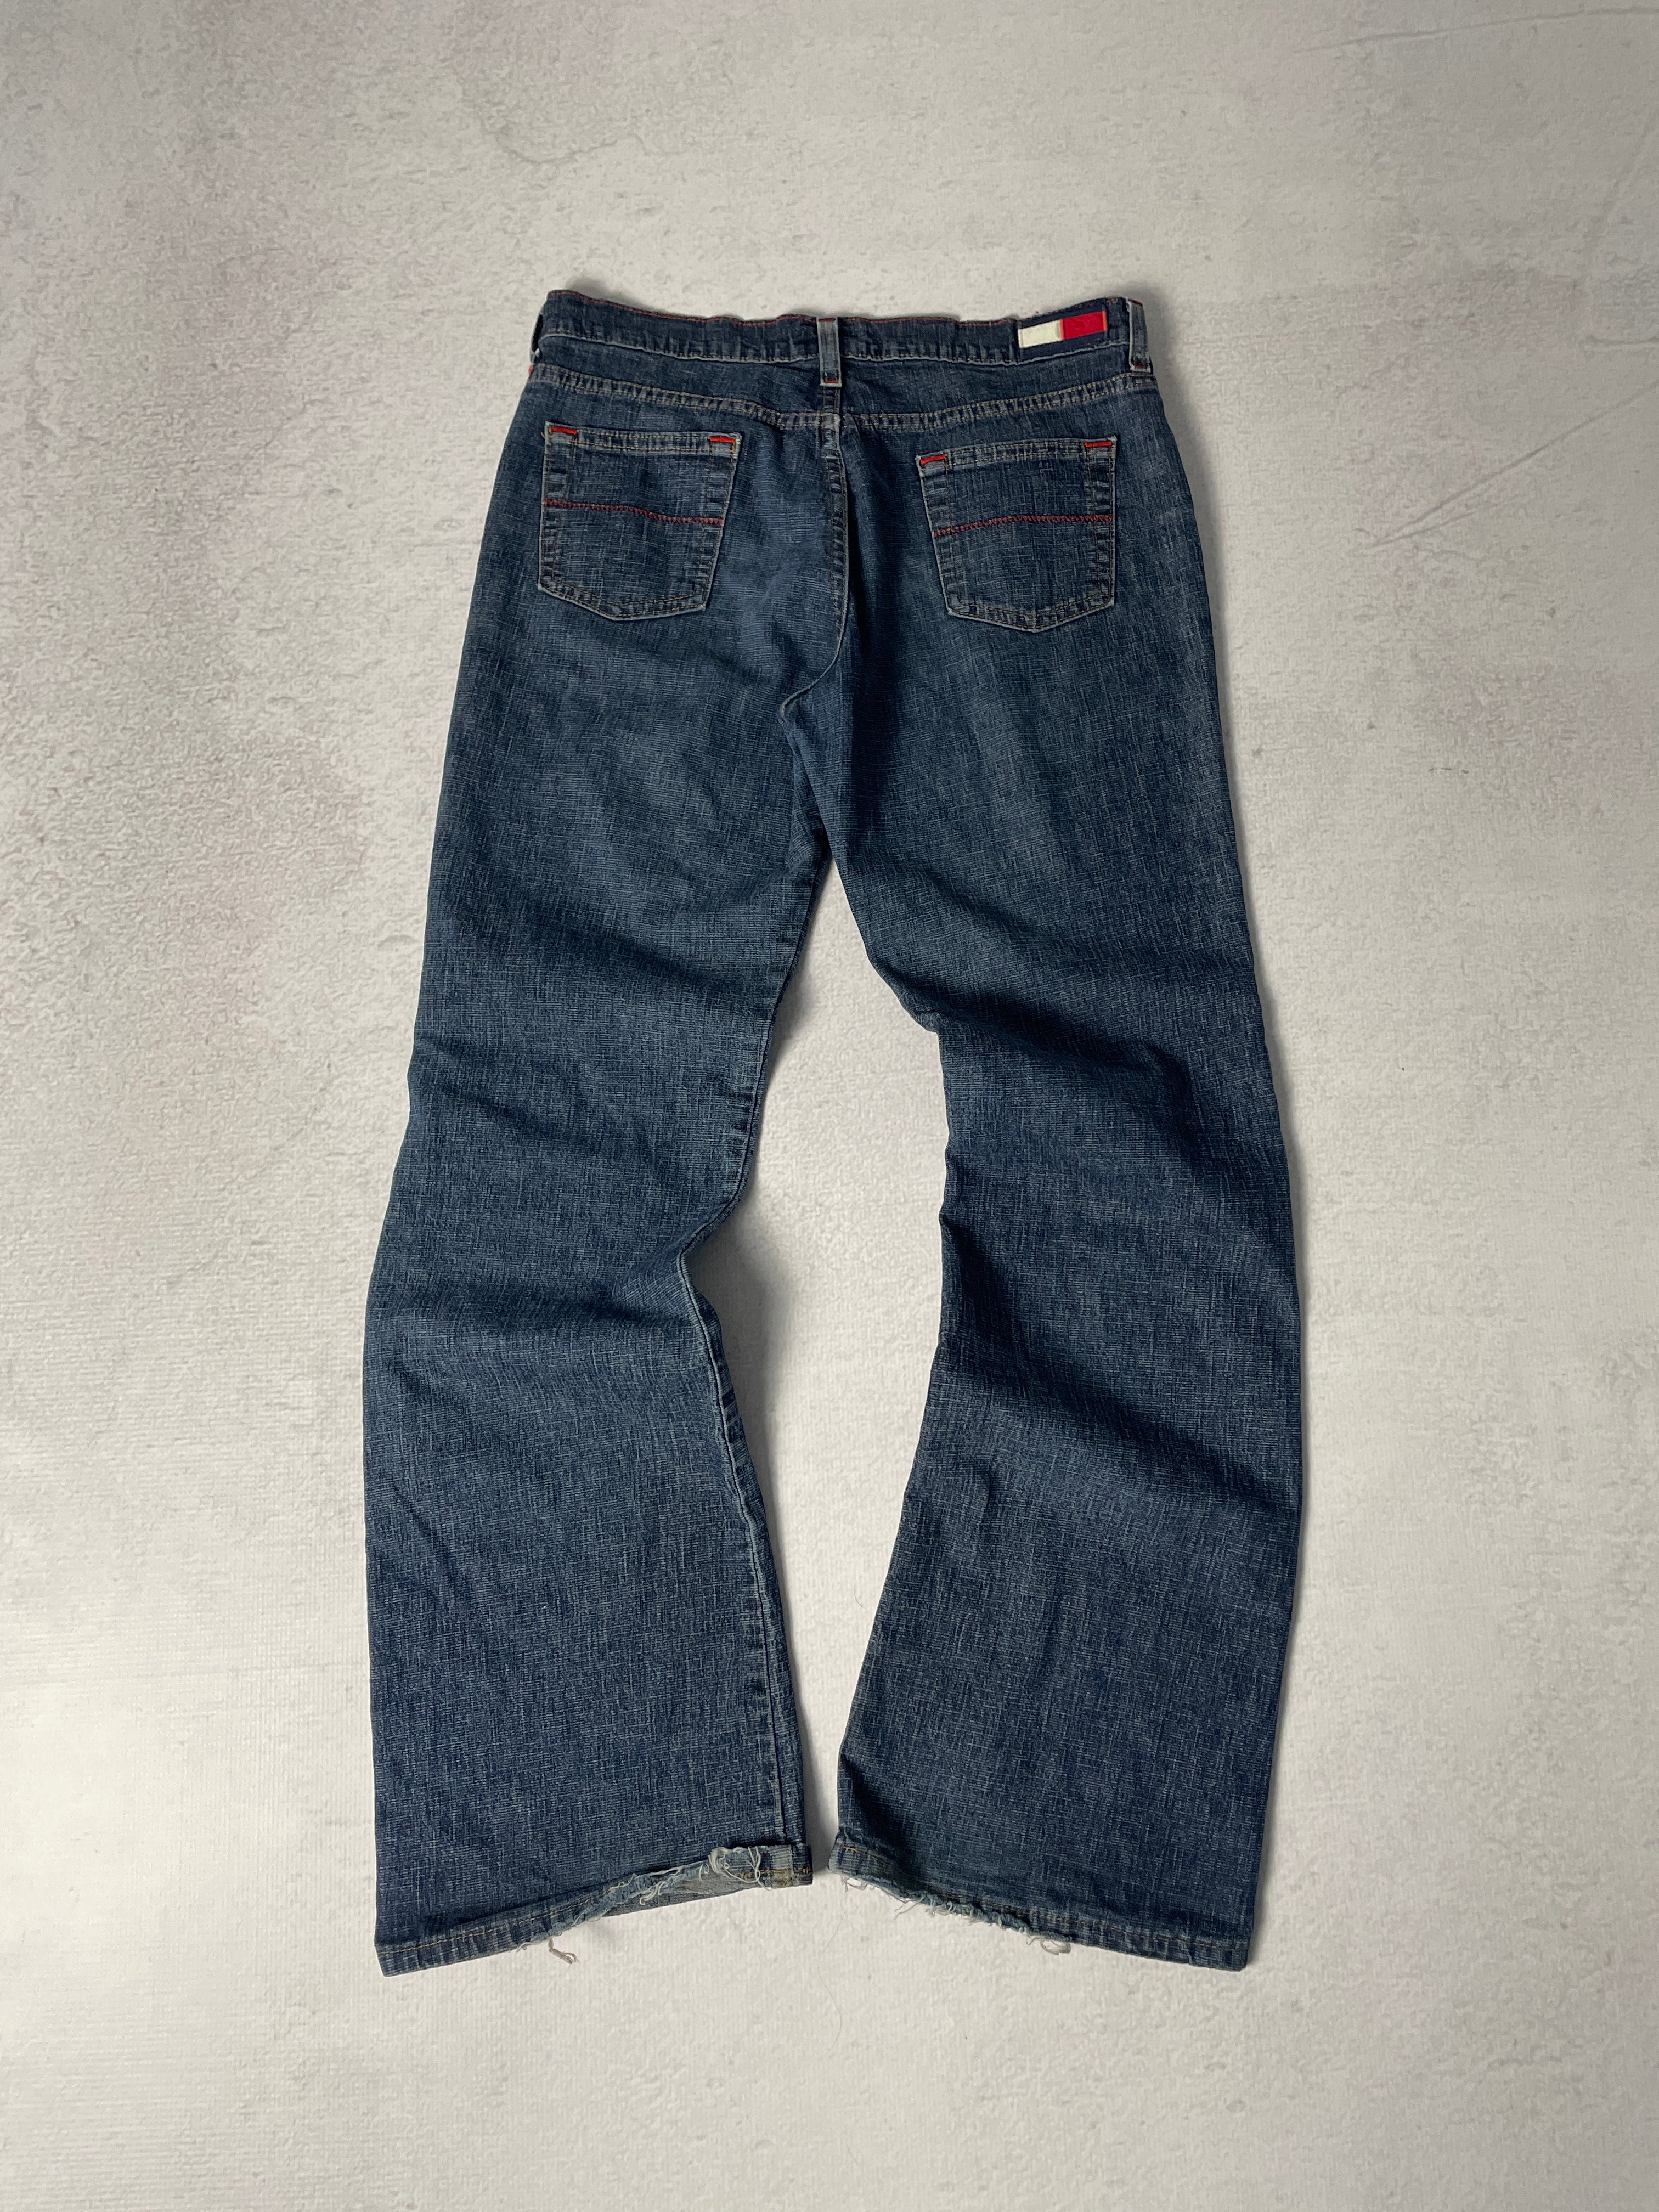 Vintage Tommy Hilfiger Jeans - Women's 29Wx32L